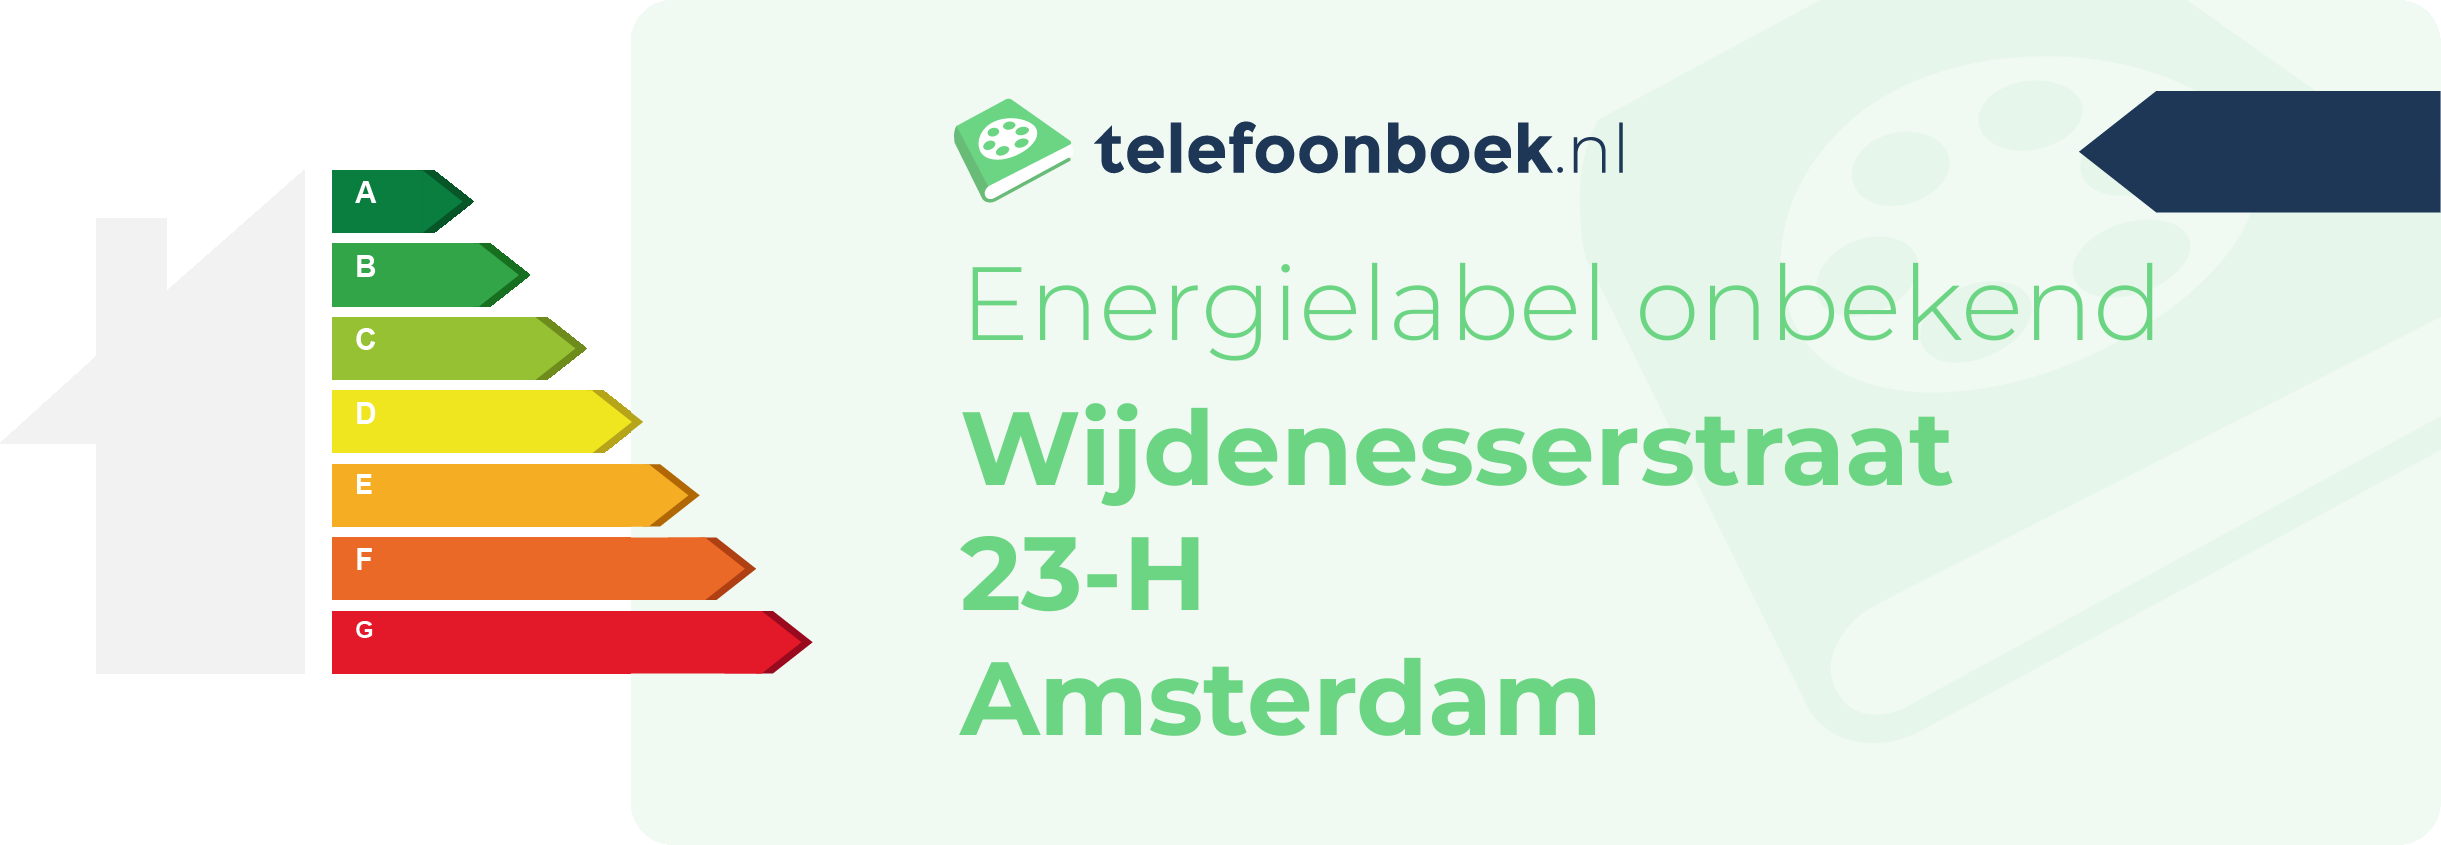 Energielabel Wijdenesserstraat 23-H Amsterdam